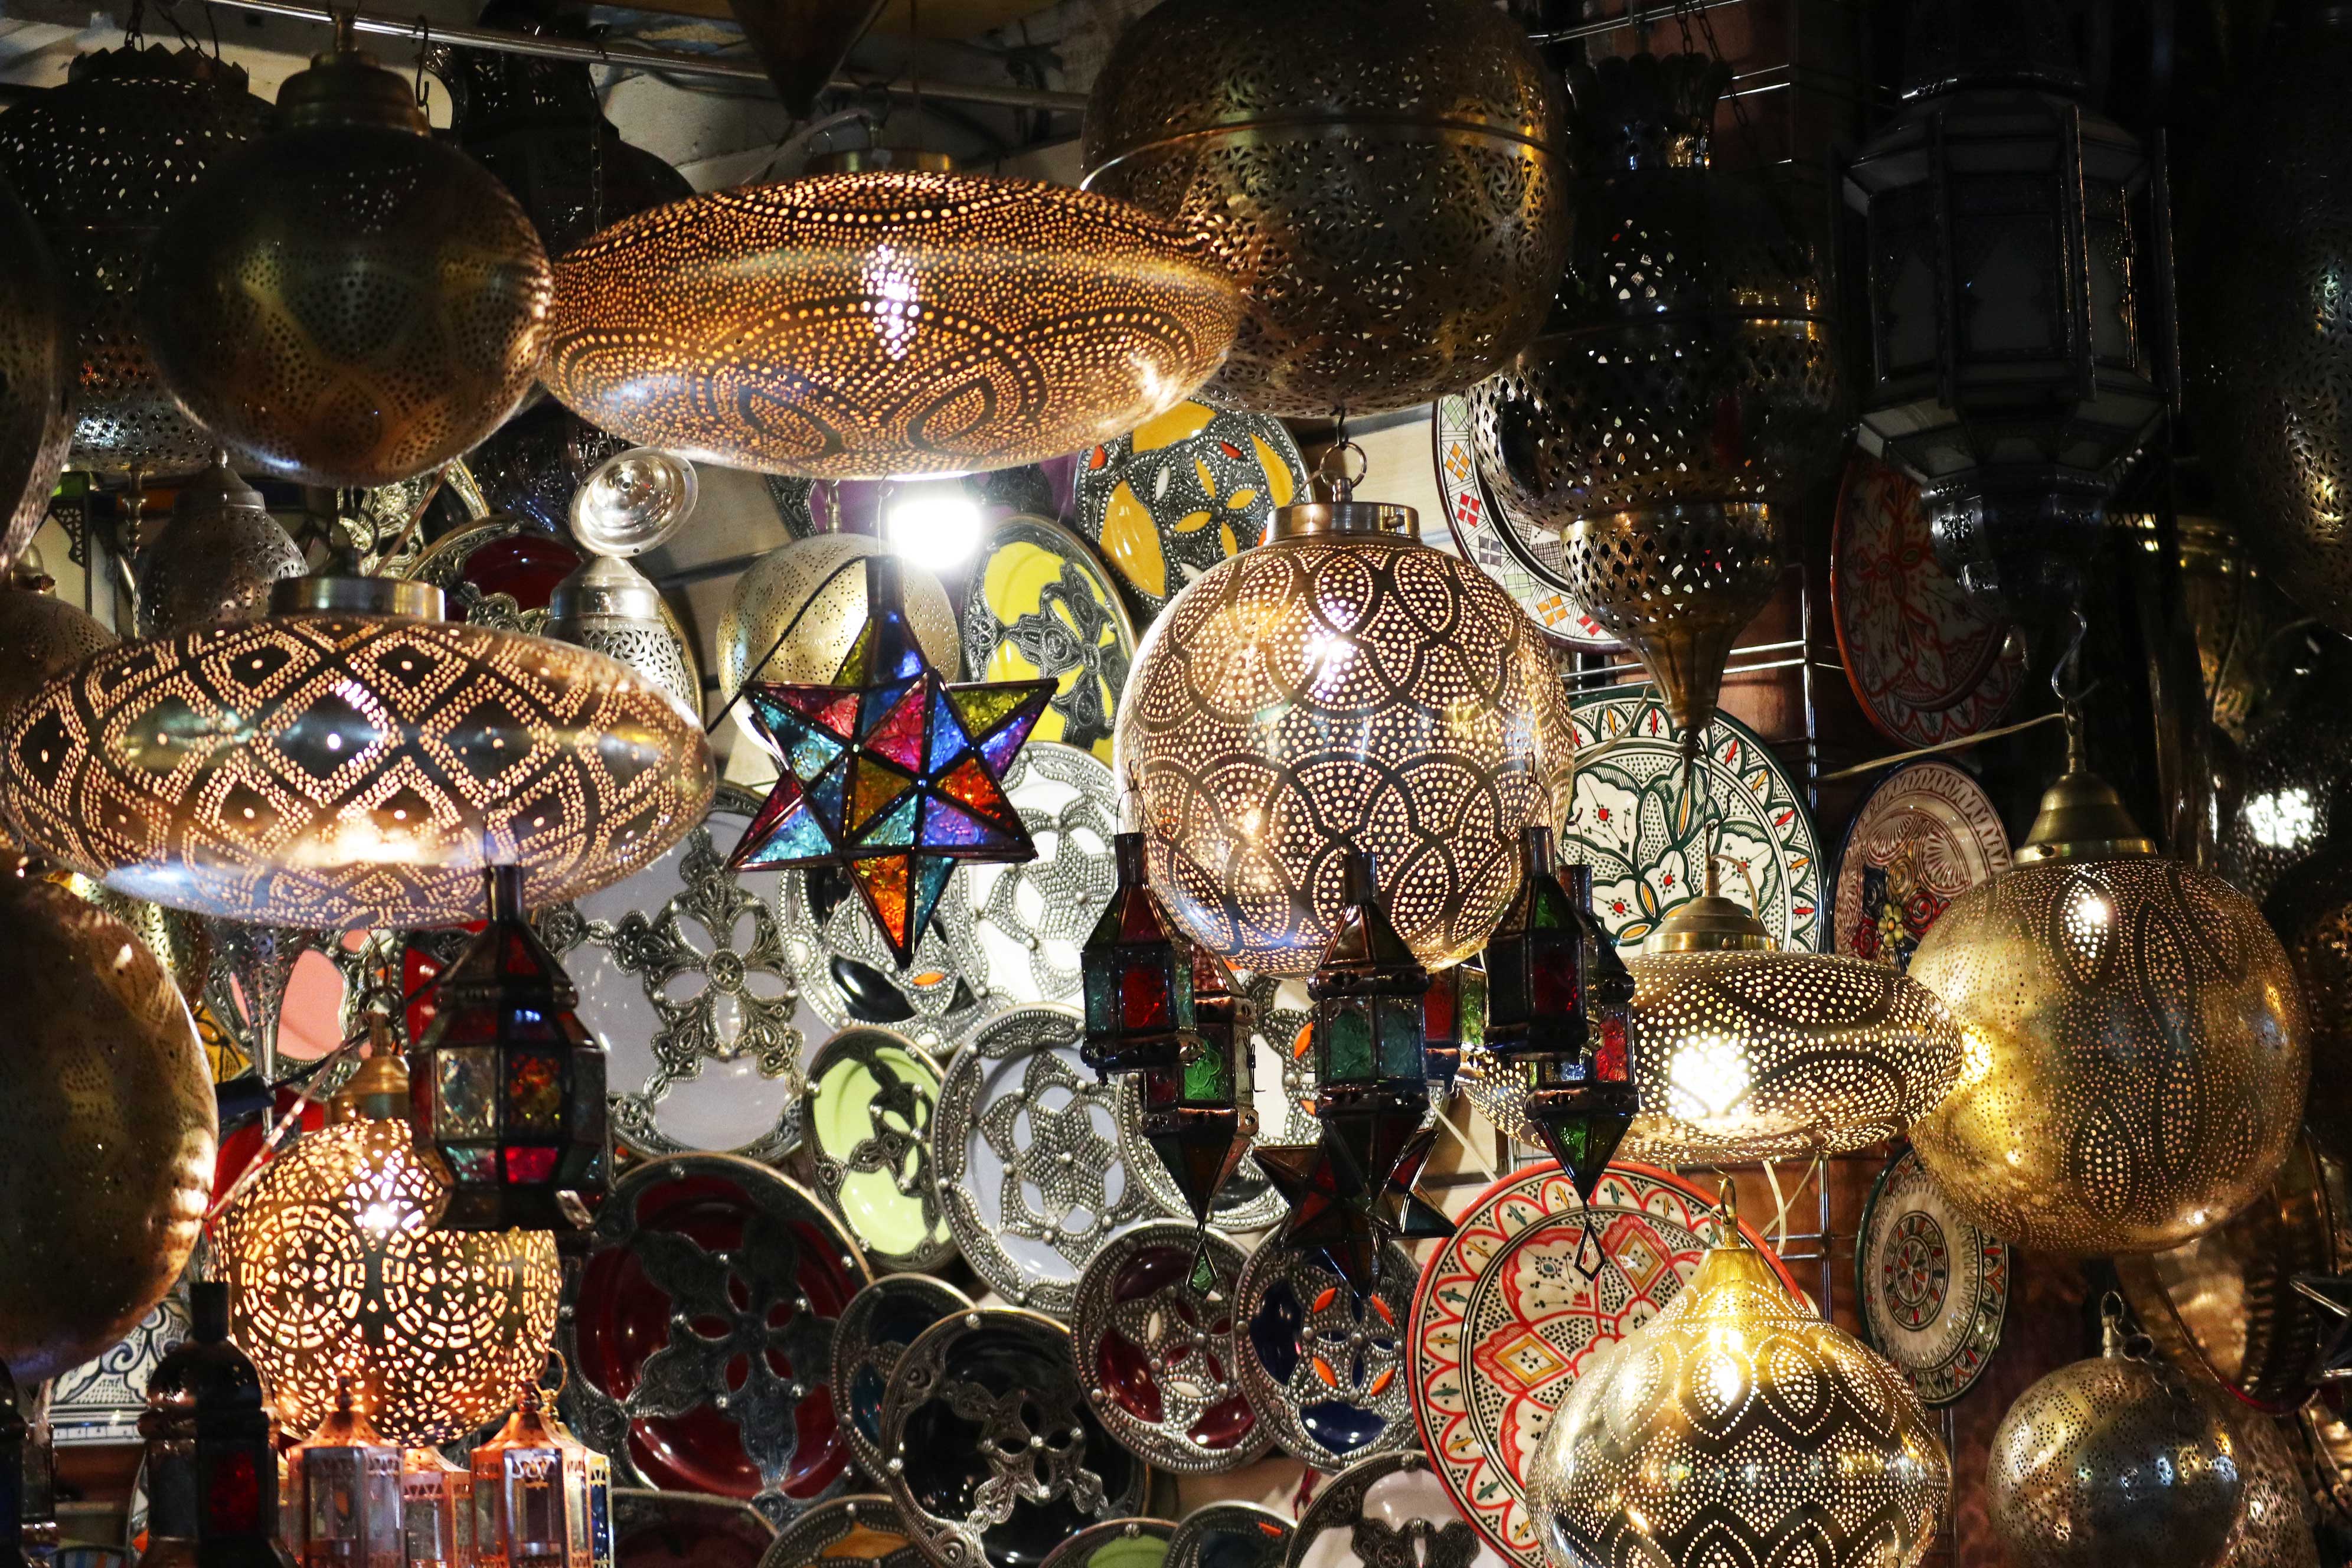 Lights of Marrakech